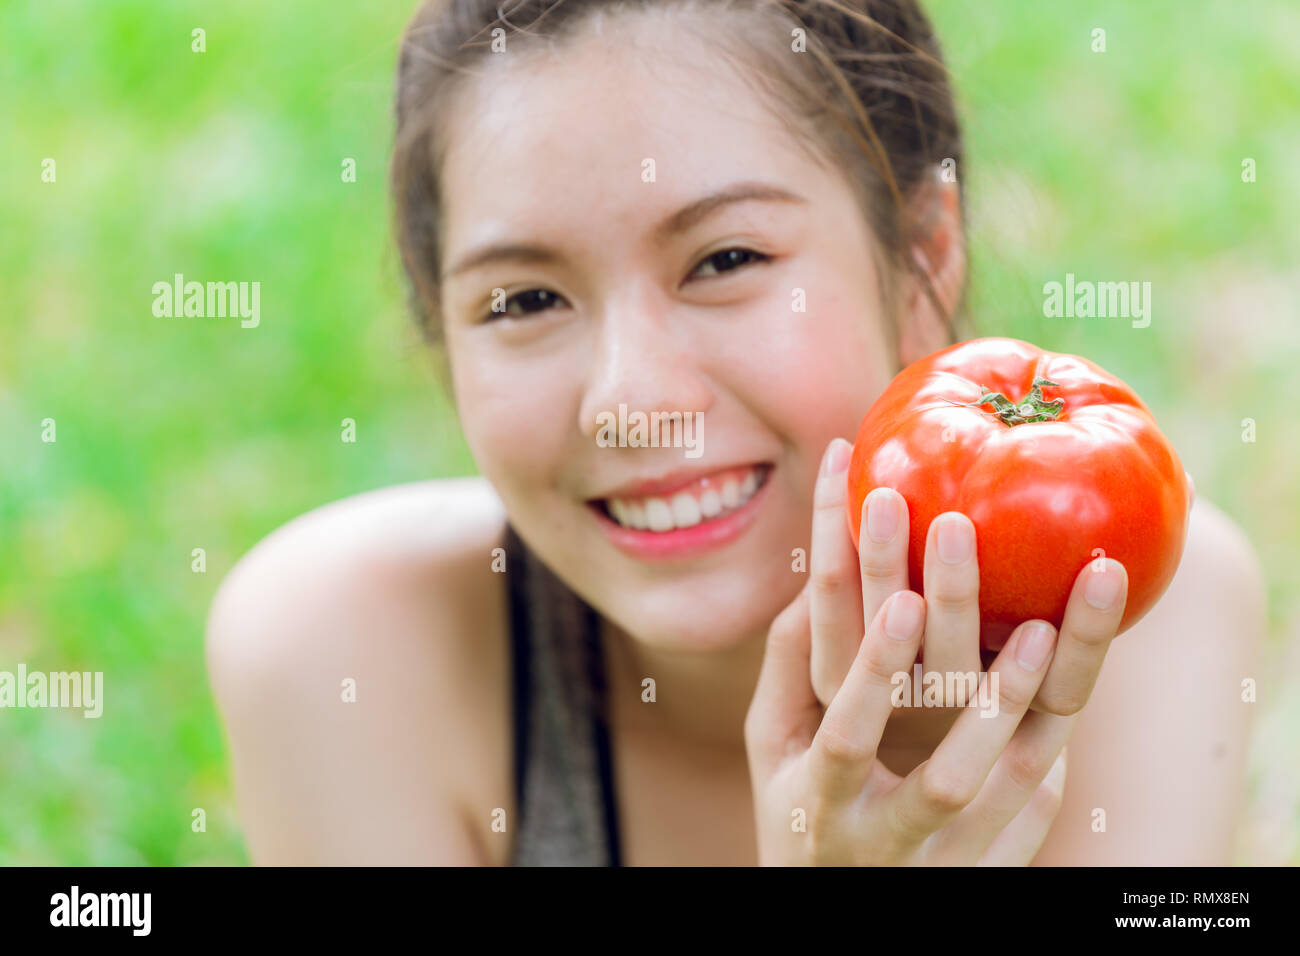 Jugendlich mit Tomate Lächeln glücklich Gute gesunde Haut essen Gemüse reichen Lycopin. Stockfoto